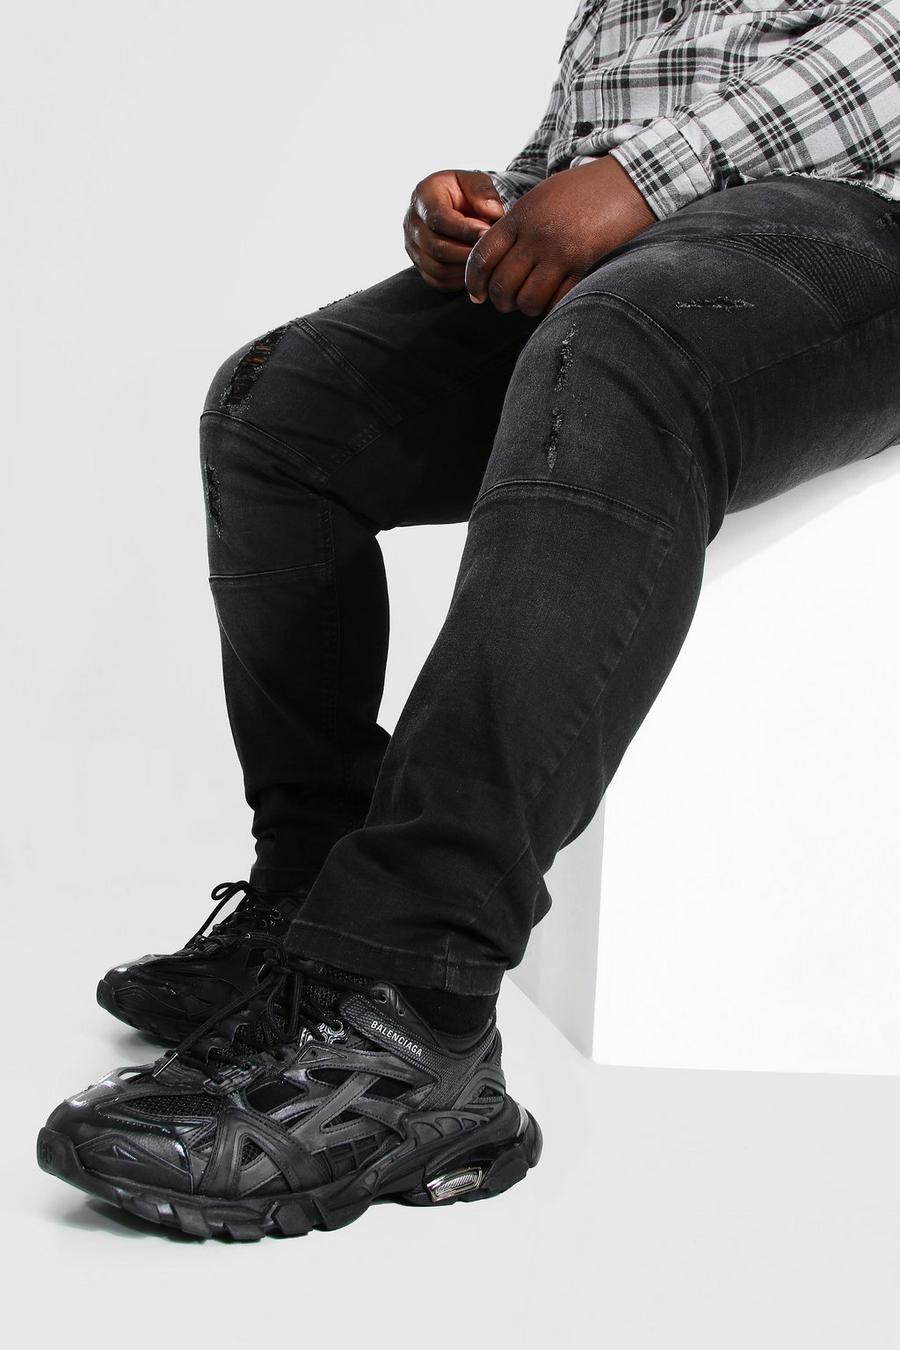 שחור סקיני ג'ינס עם פאנל בסגנון אופנוענים לגברים גדולים וגבוהים image number 1